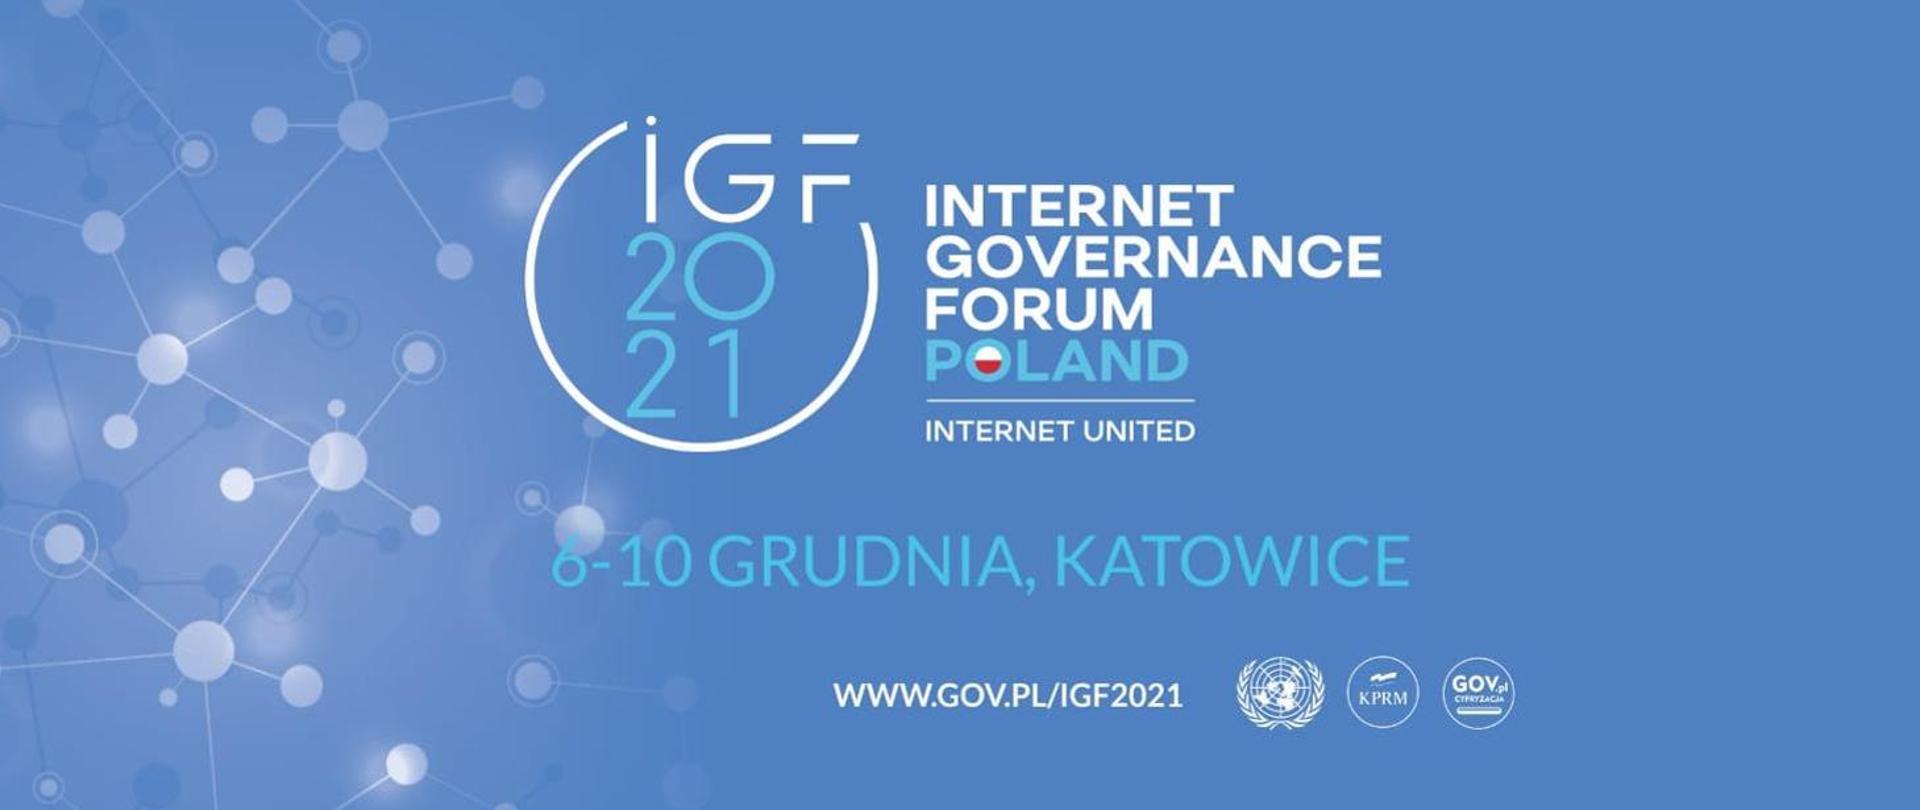 Logotyp ceremonii 16. Szczytu Cyfrowego ONZ – Internet Governance Forum, IGF 2021 i napis: 6-10 grudnia, Katowice